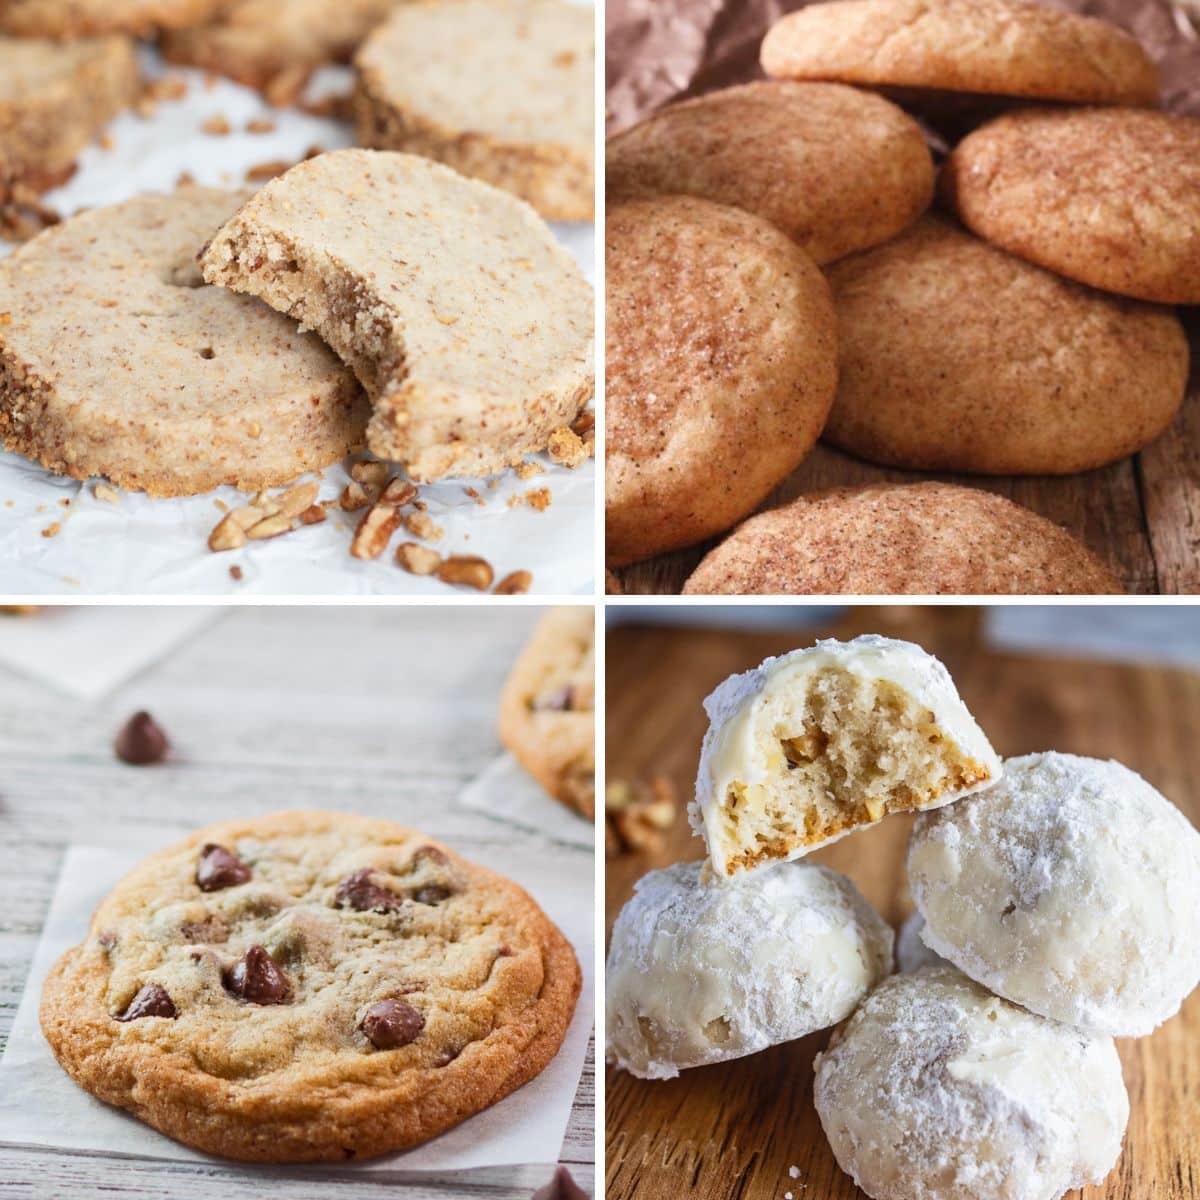 Čtvercový rozdělený obrázek zobrazující soubory cookie, které jsou populární v různých státech USA.